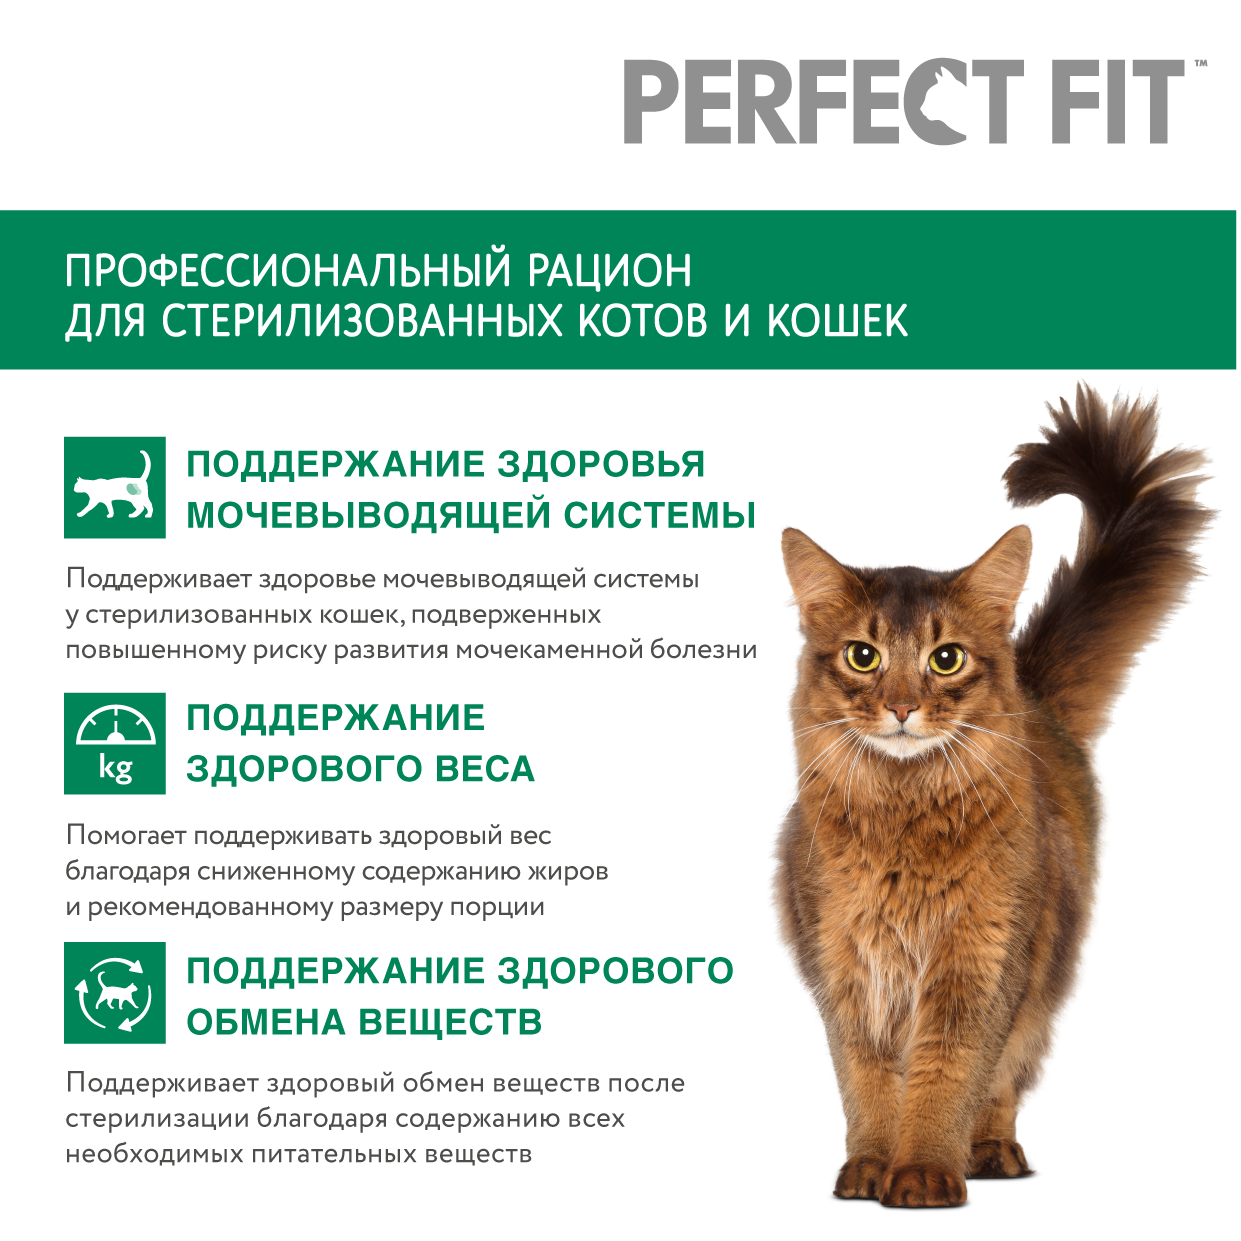 Сухой полнорационный корм PERFECT FIT™ для стерилизованных кошек, с курицей, 1.2кг